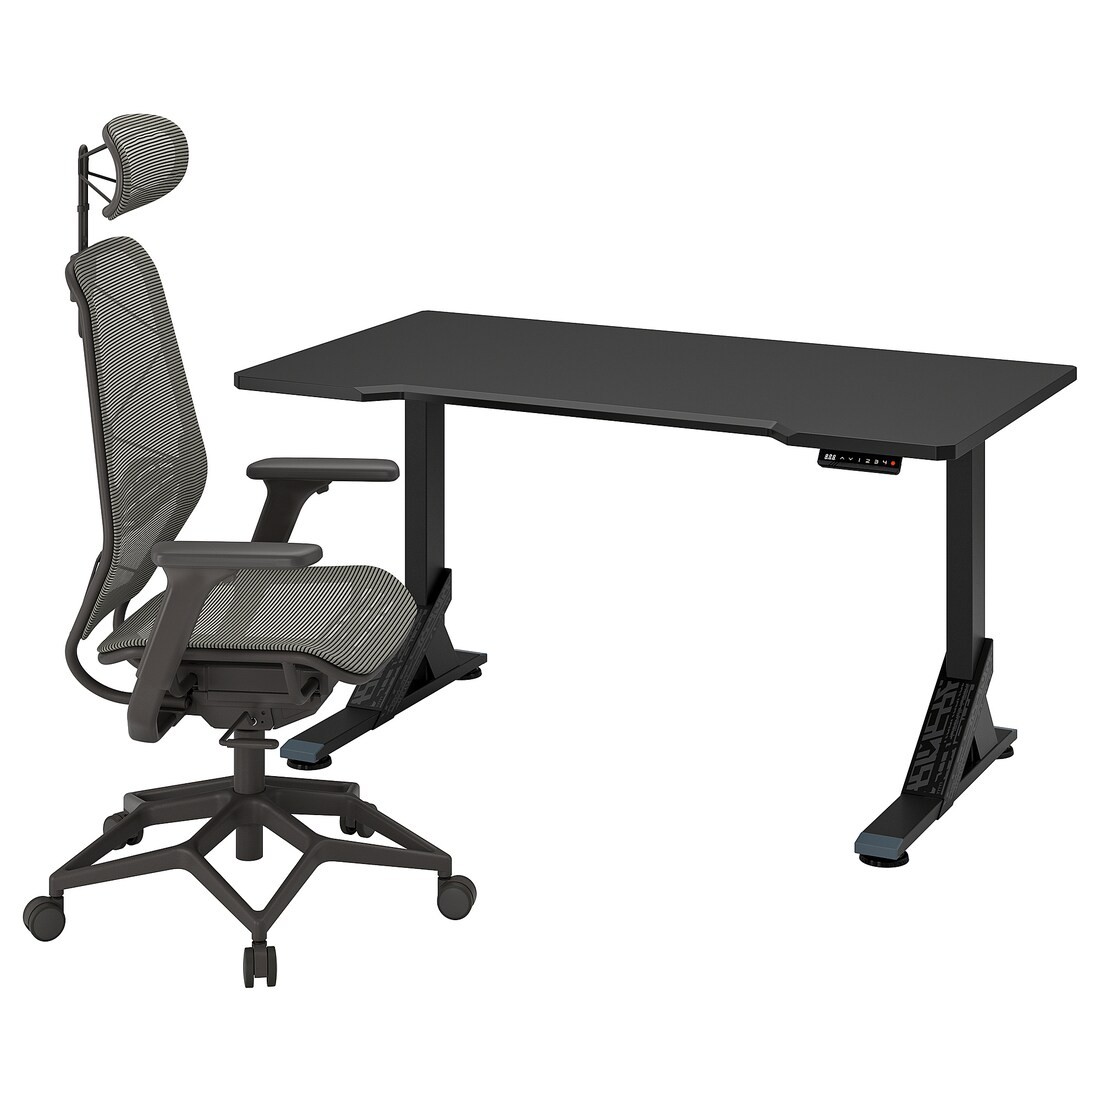 UPPSPEL / STYRSPEL Геймерський стіл та крісло, чорний / сірий, 140x80 см